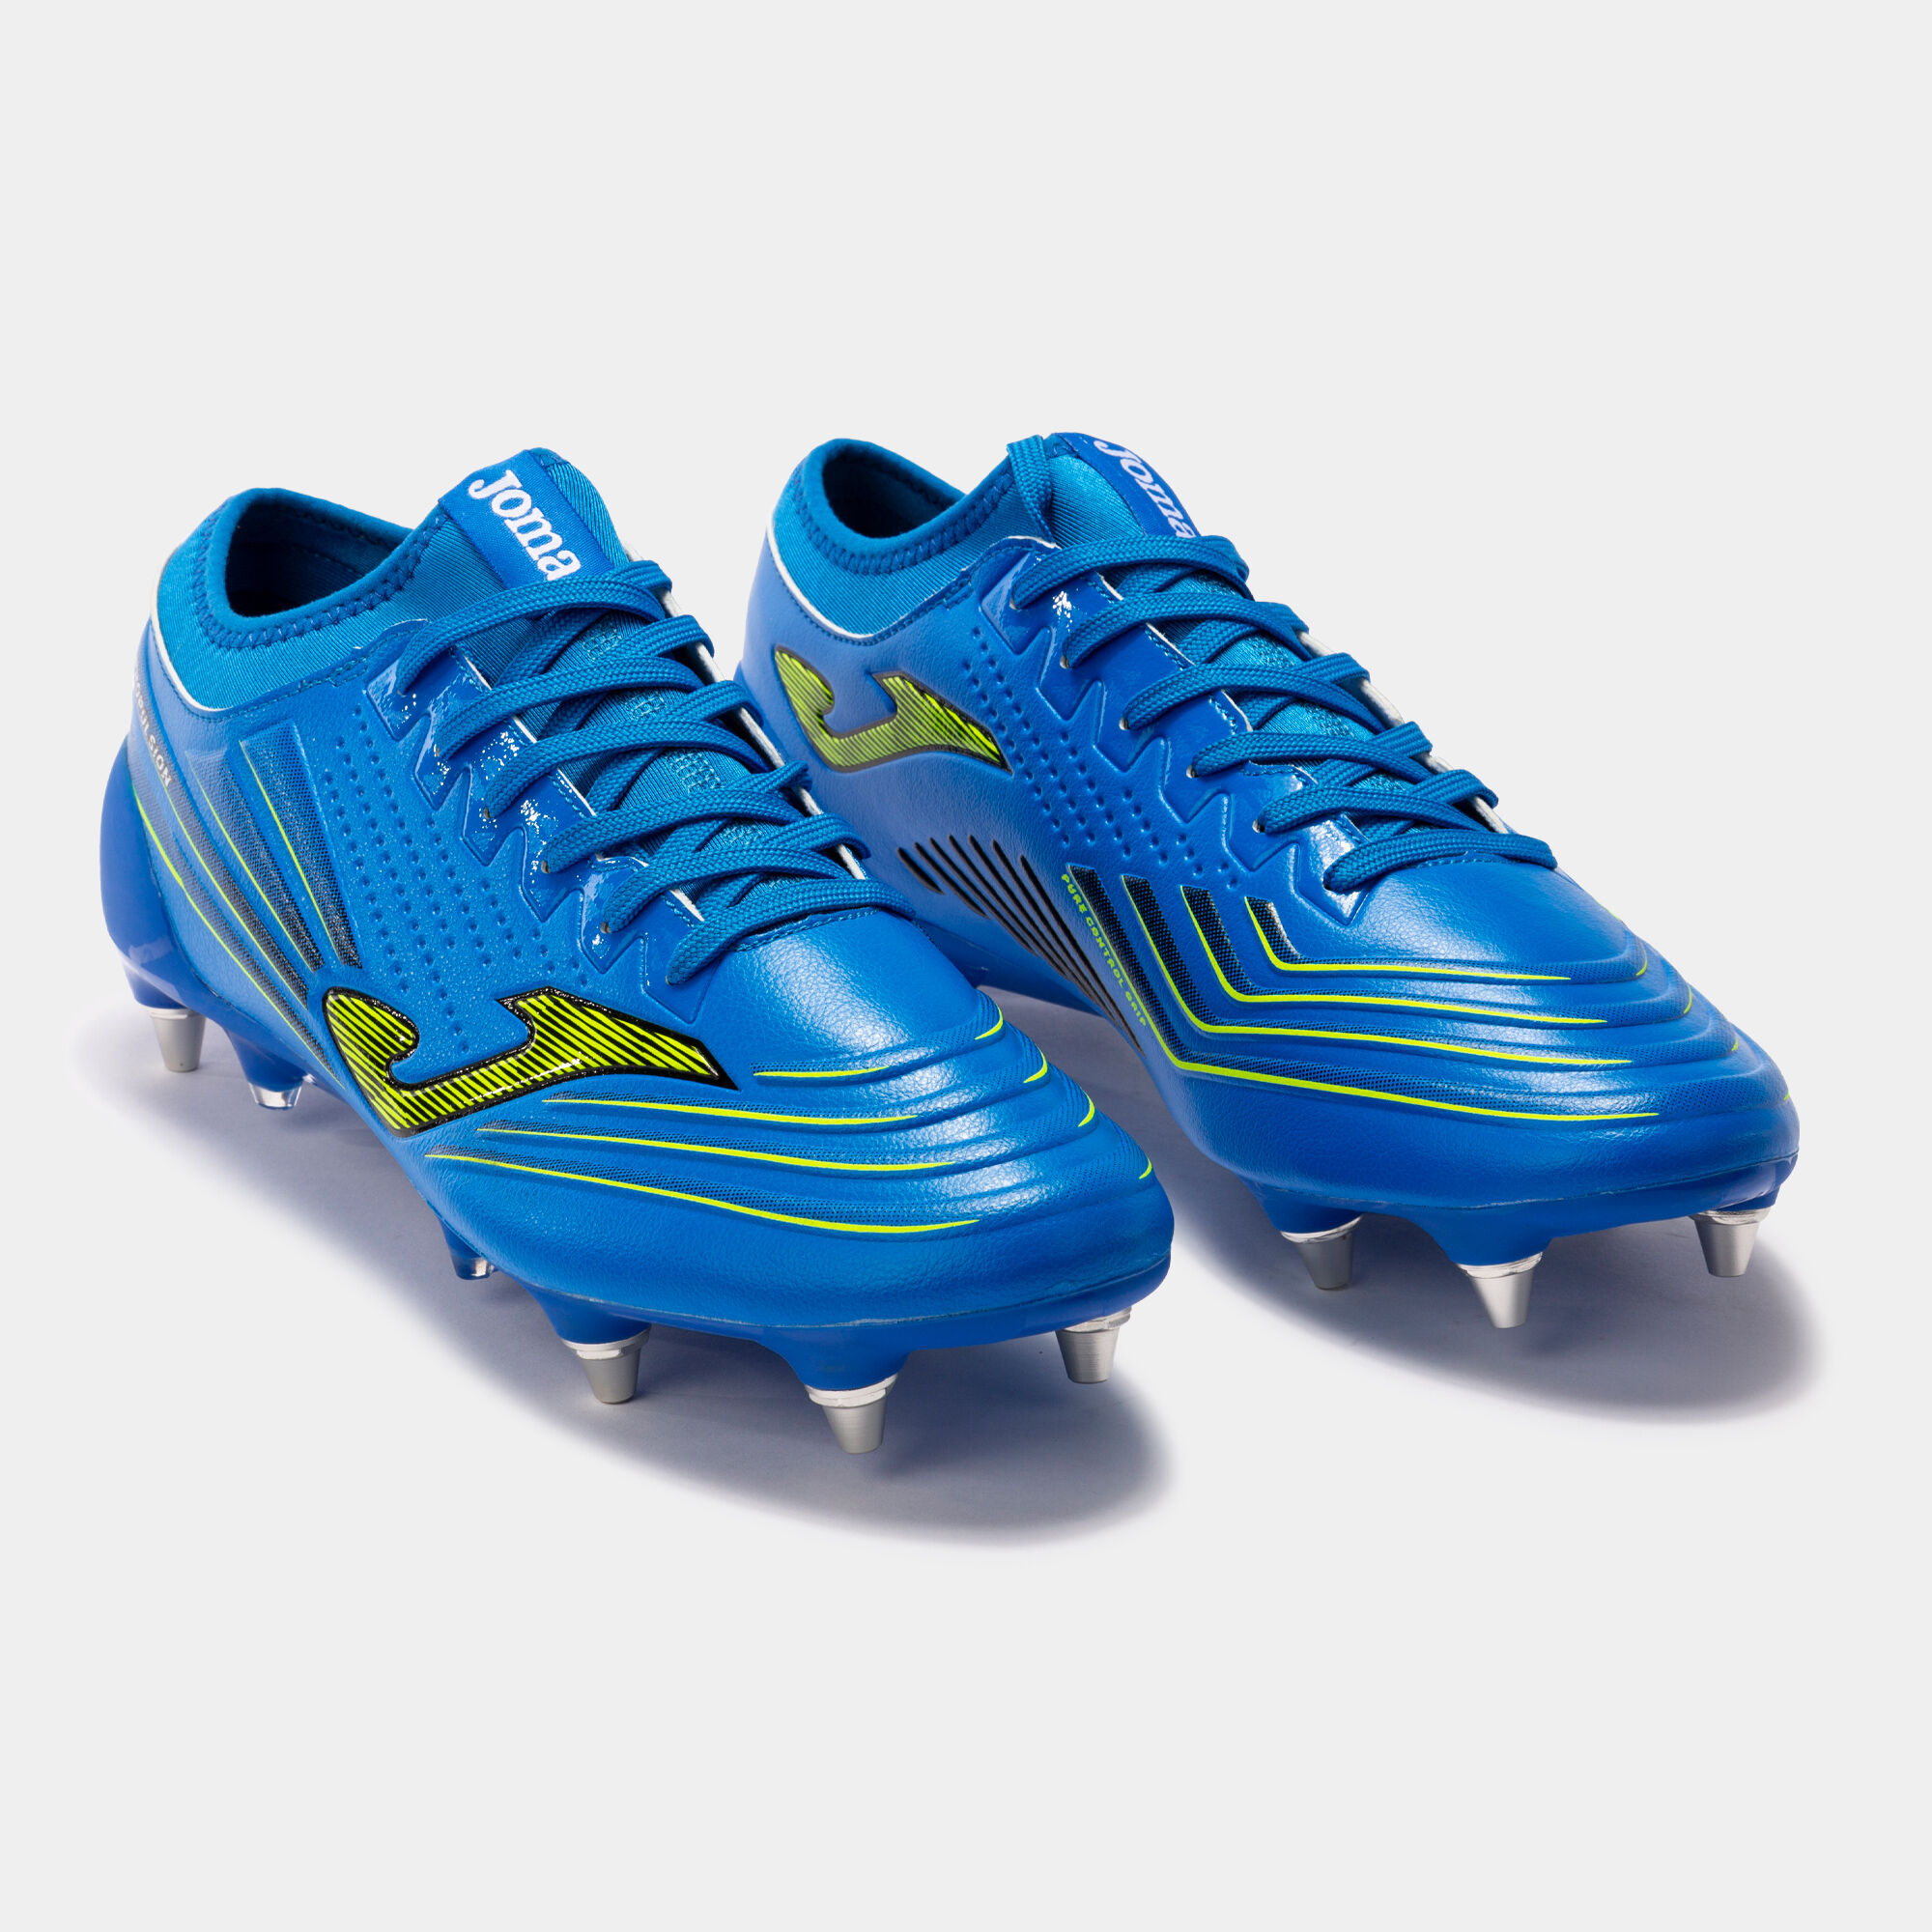 Buty piłkarskie Propulsion Cup 21 miękkie podłoże SG niebieski royal